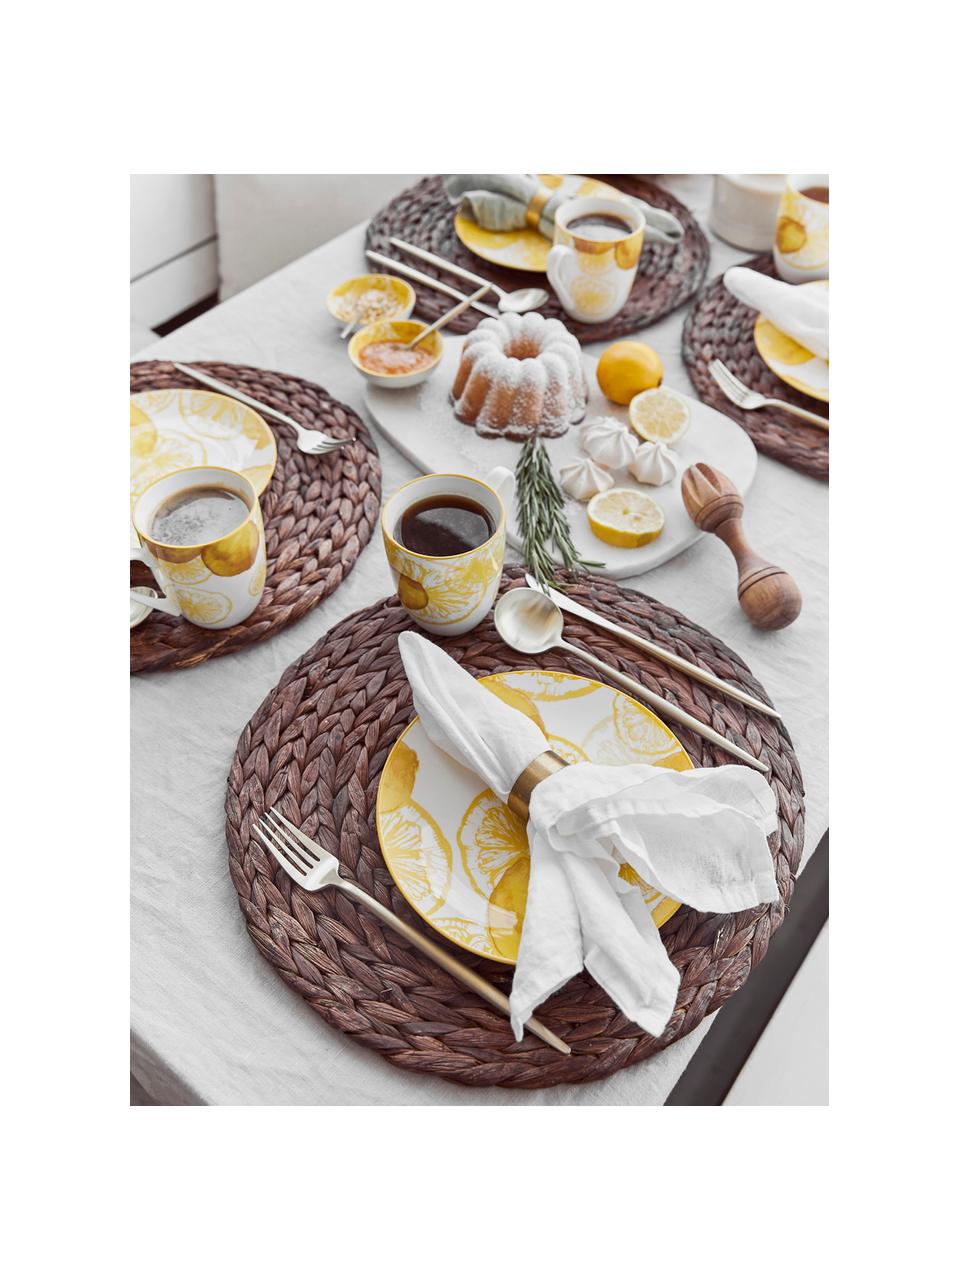 Serviettes de table pur lin Ruta, 6 pièces, Blanc neige, larg. 43 x long. 43 cm